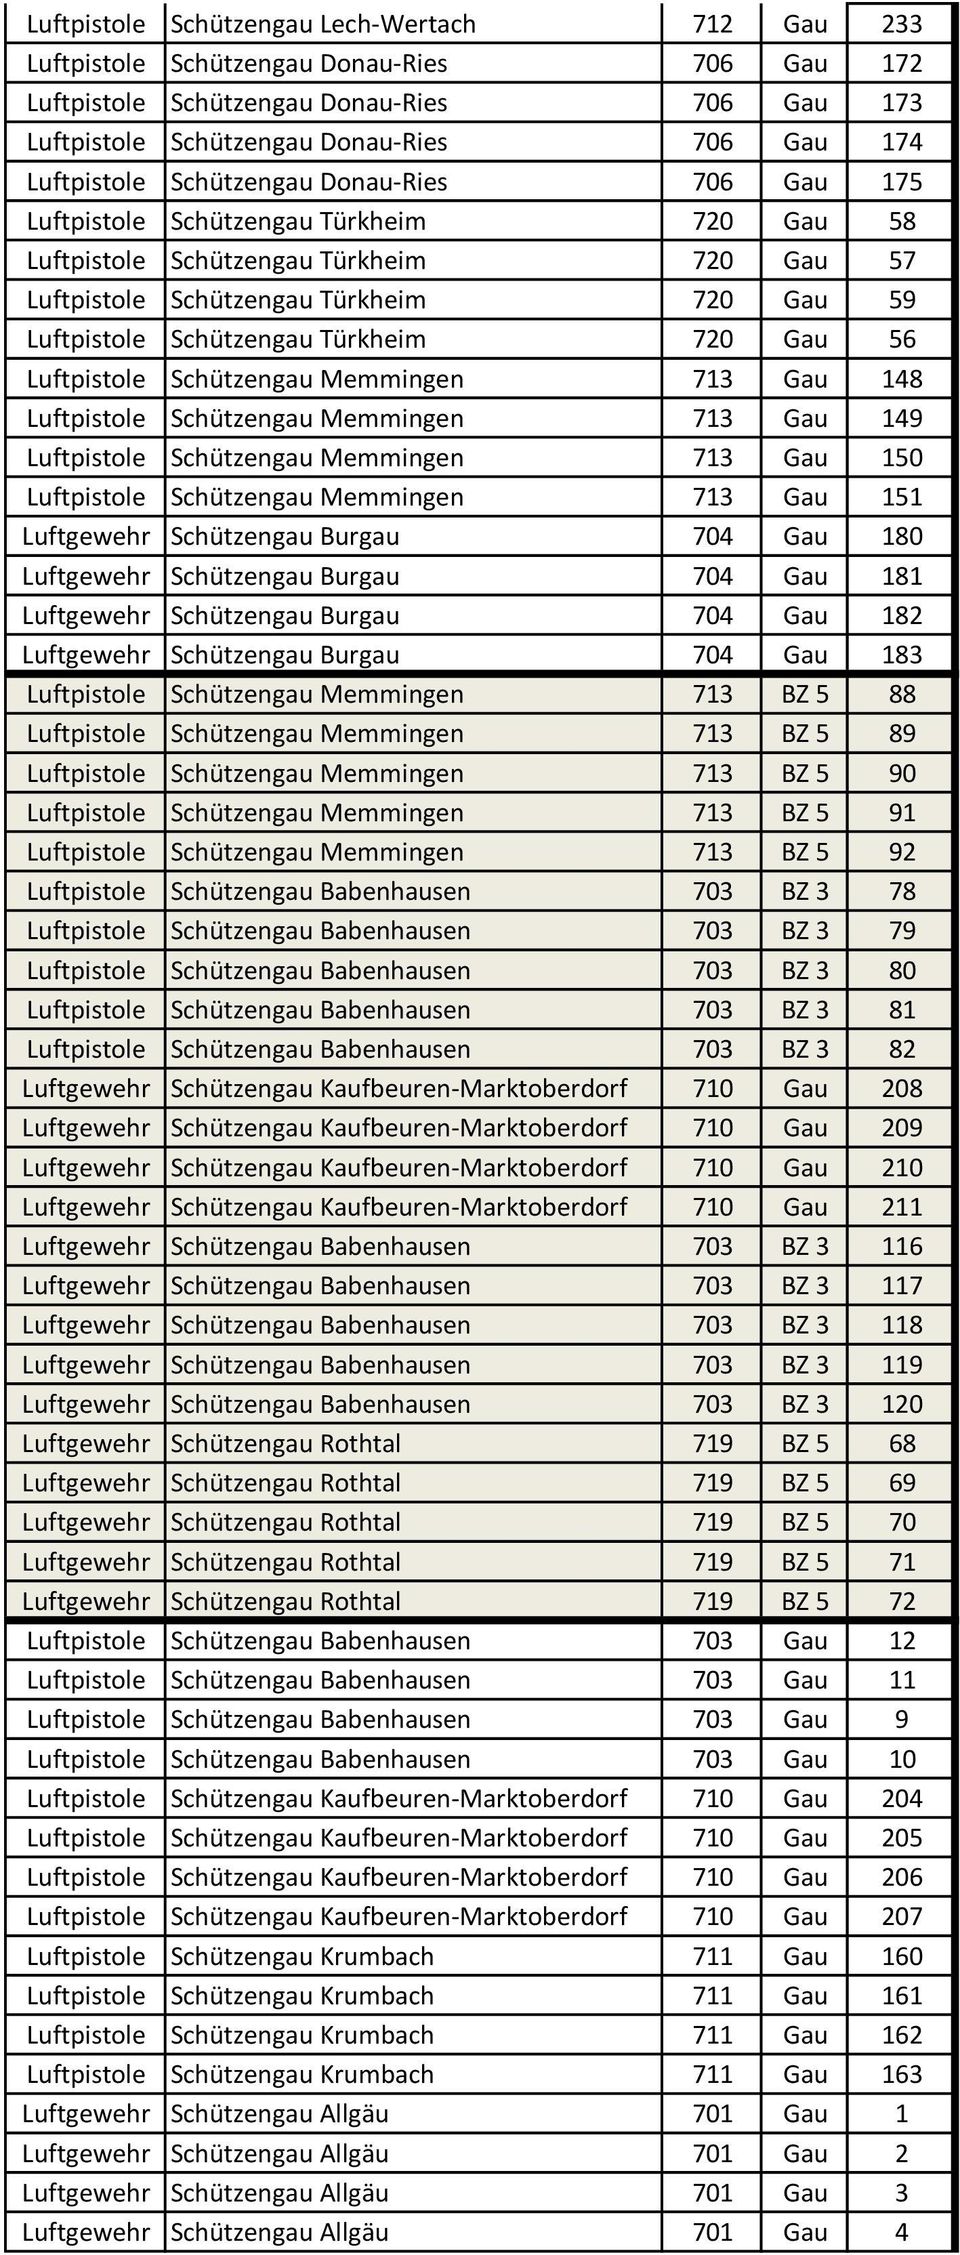 Schützengau Türkheim 720 Gau 56 Luftpistole Schützengau Memmingen 713 Gau 148 Luftpistole Schützengau Memmingen 713 Gau 149 Luftpistole Schützengau Memmingen 713 Gau 150 Luftpistole Schützengau